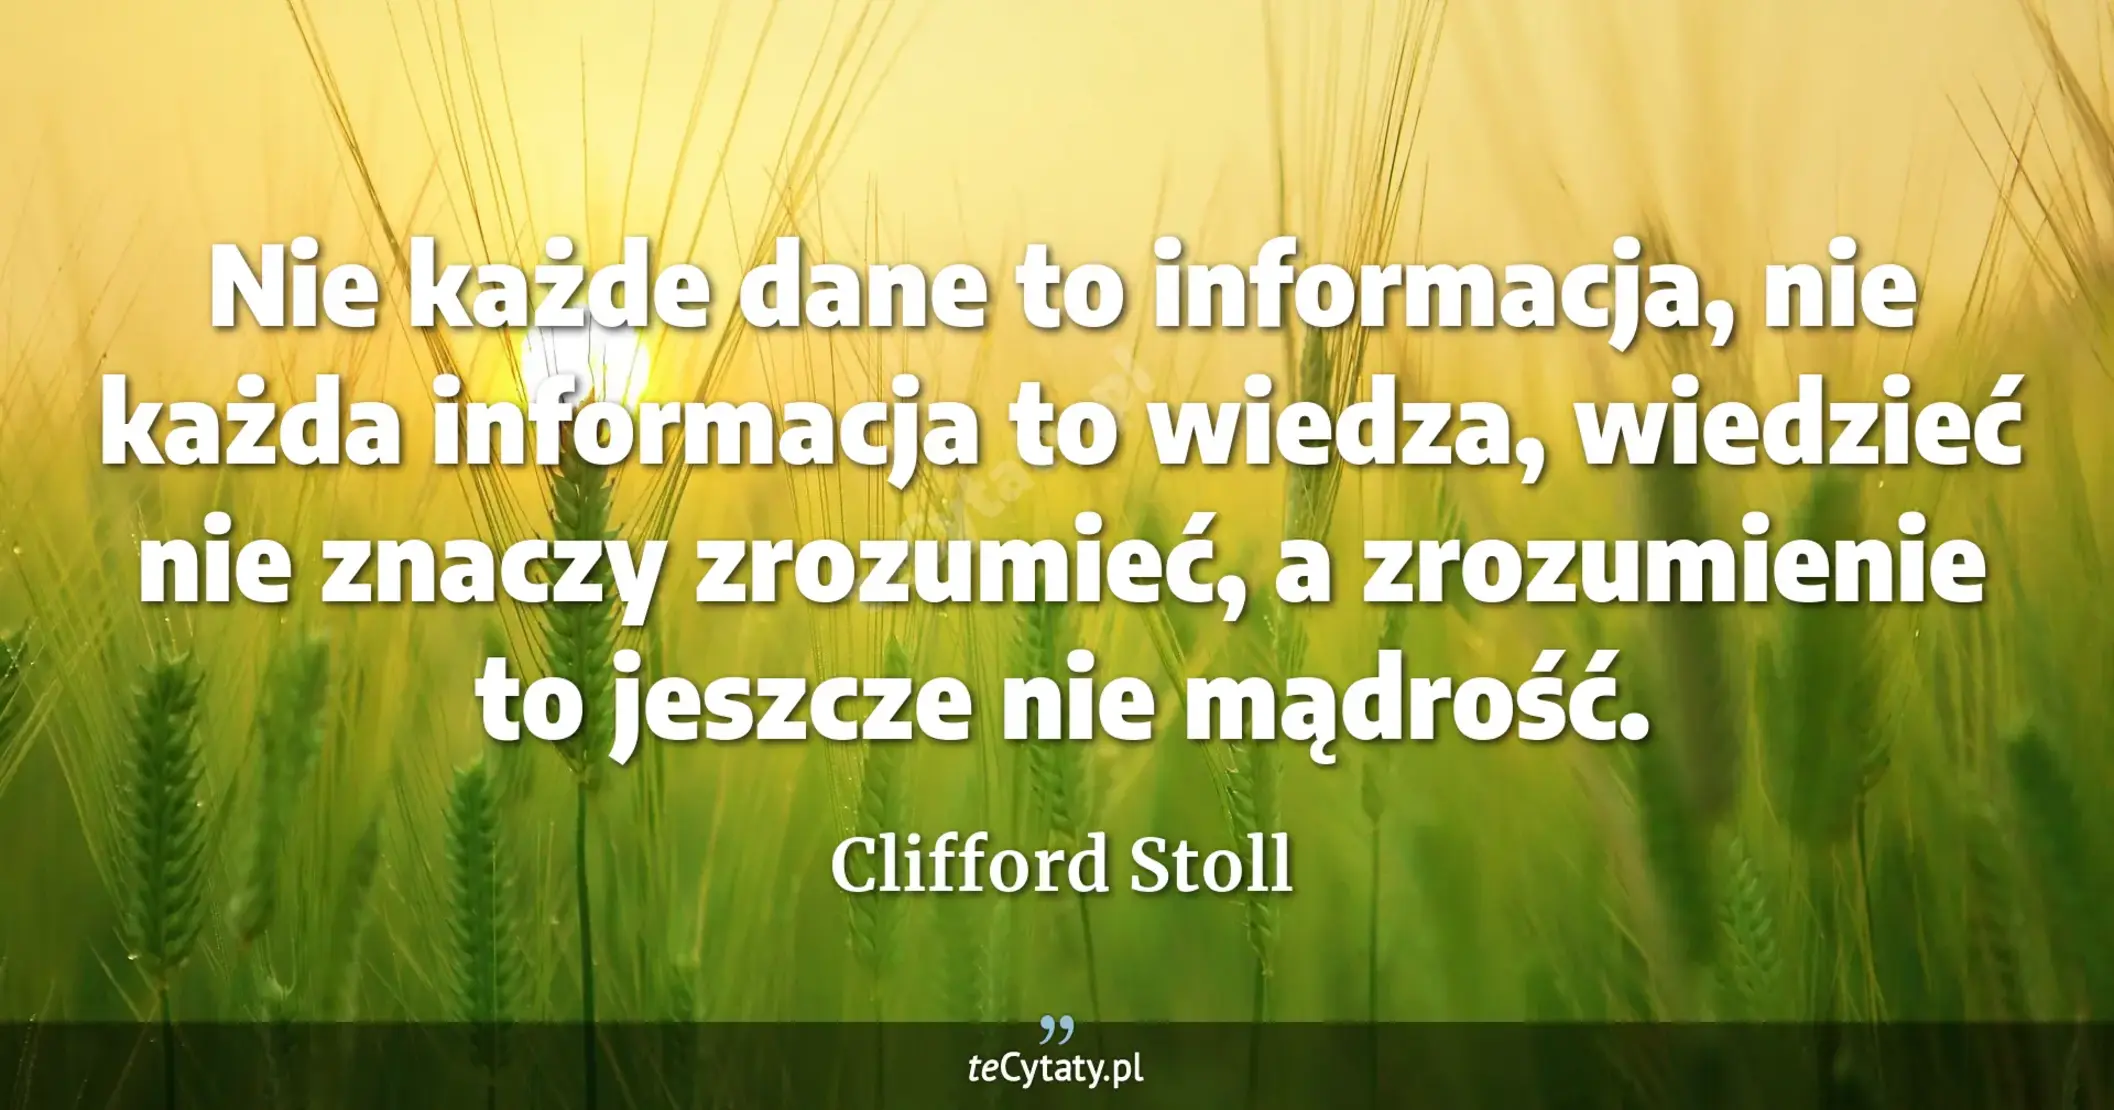 Nie każde dane to informacja, nie każda informacja to wiedza, wiedzieć nie znaczy zrozumieć, a zrozumienie to jeszcze nie mądrość. - Clifford Stoll